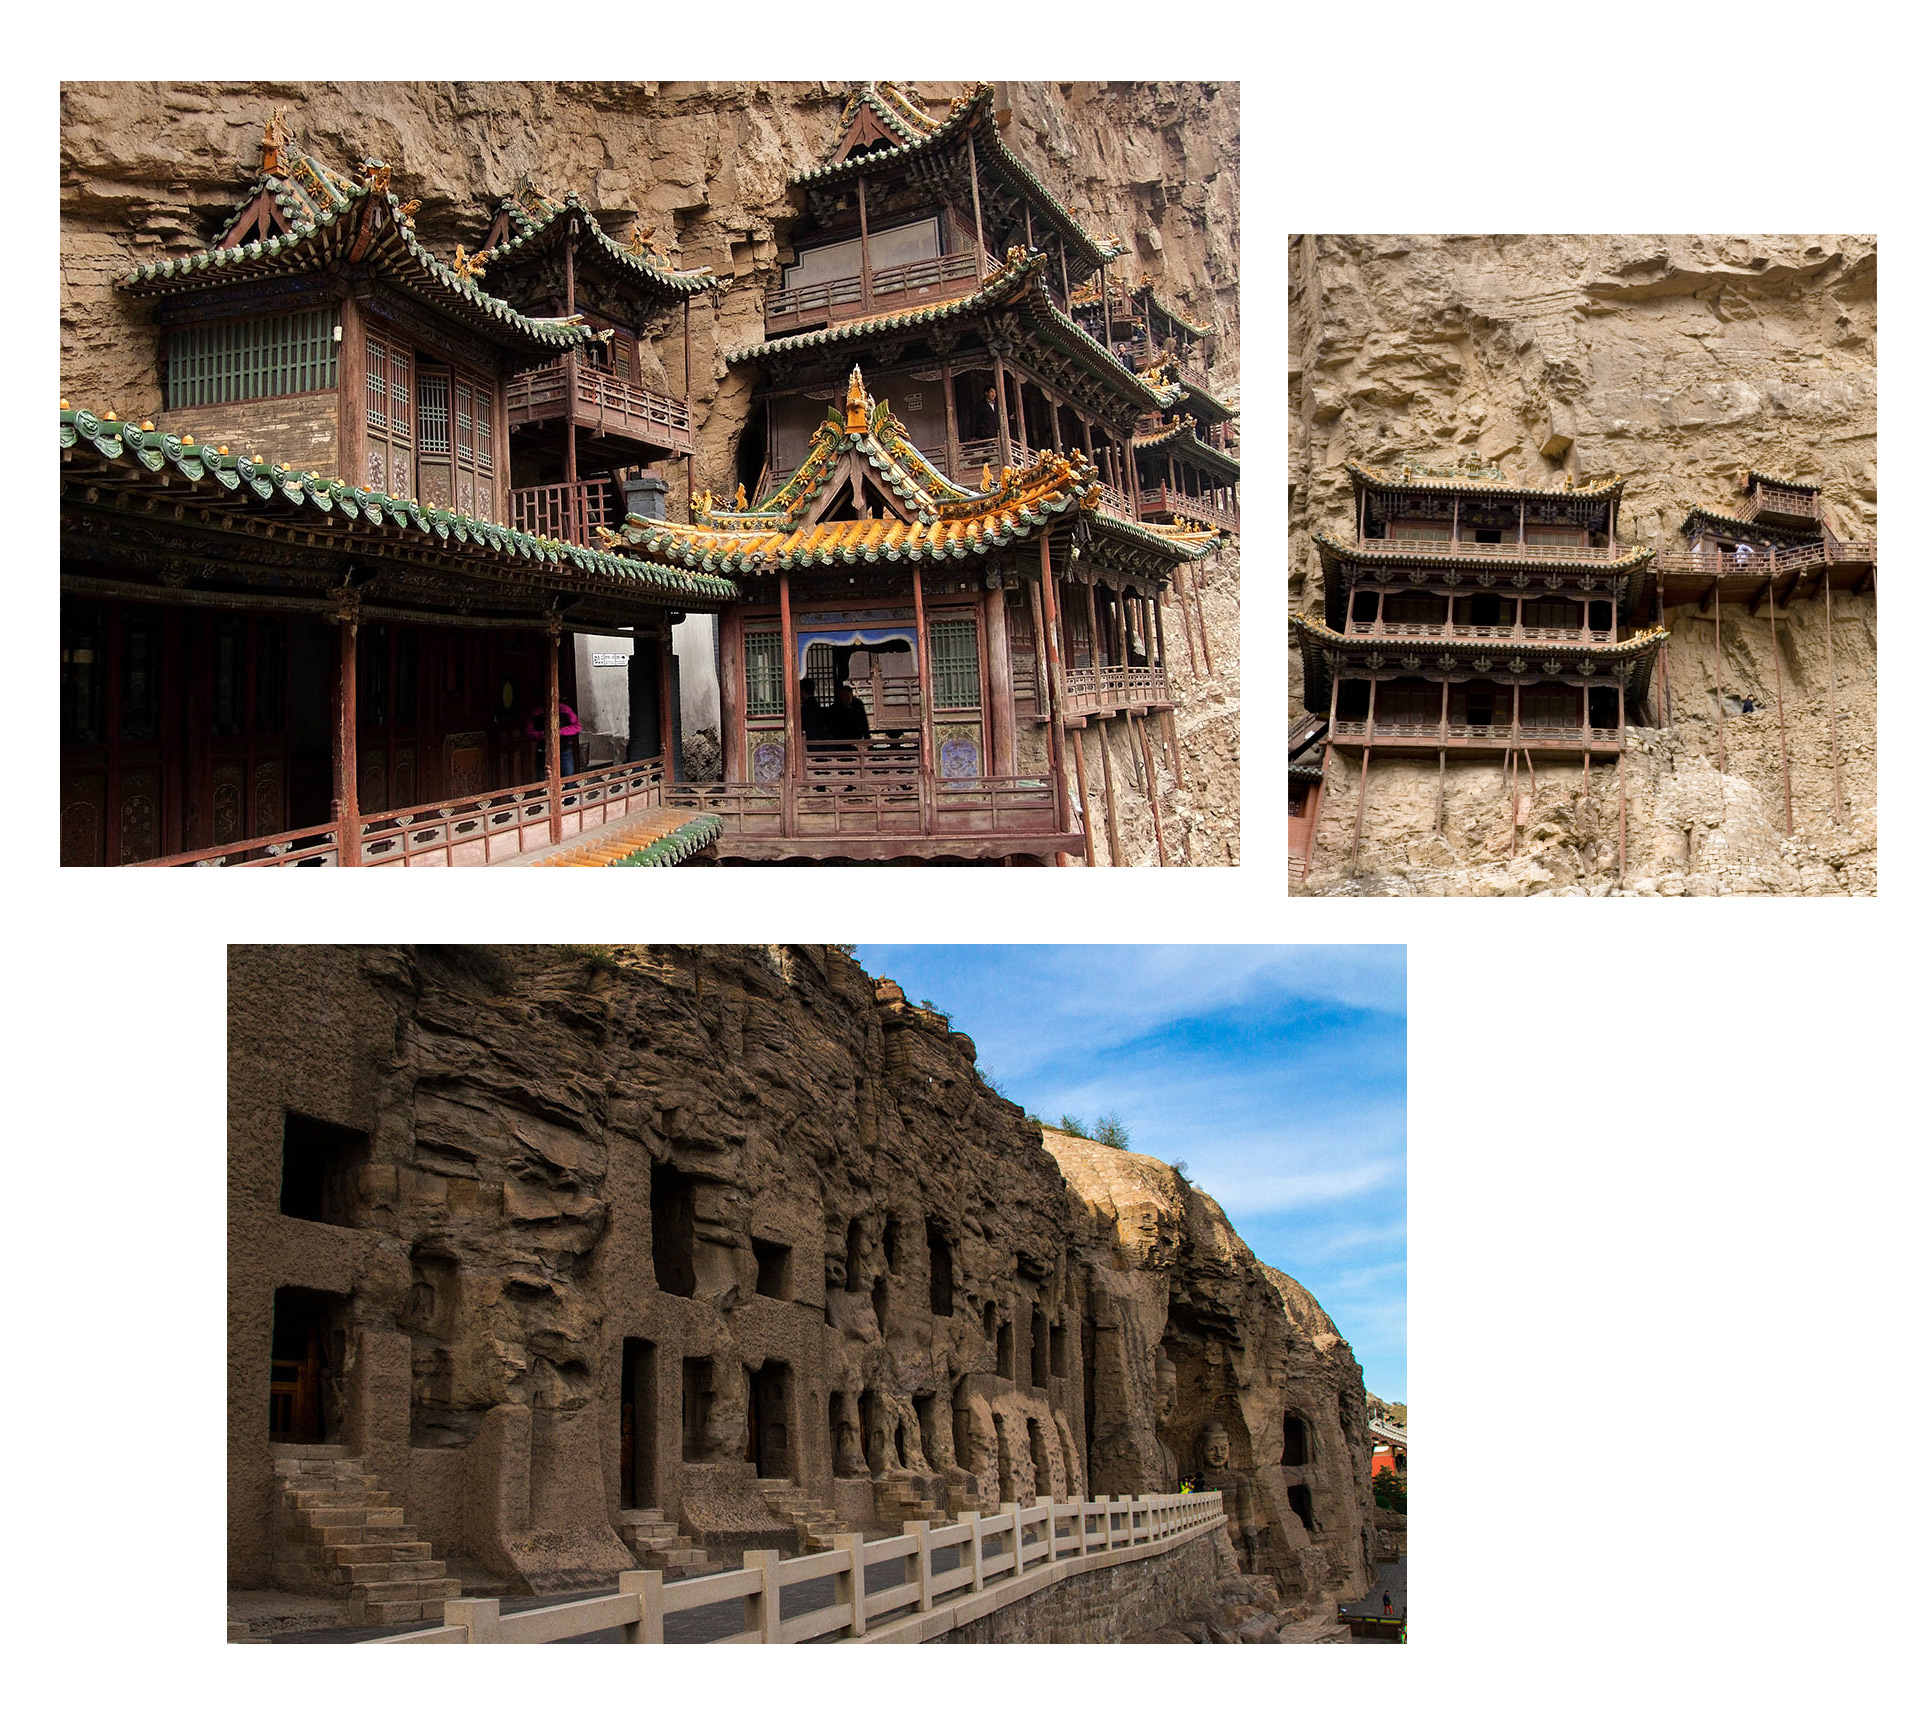 Hành trình khám phá những ngôi chùa cổ đầy bí ẩn ở Trung Quốc - 3